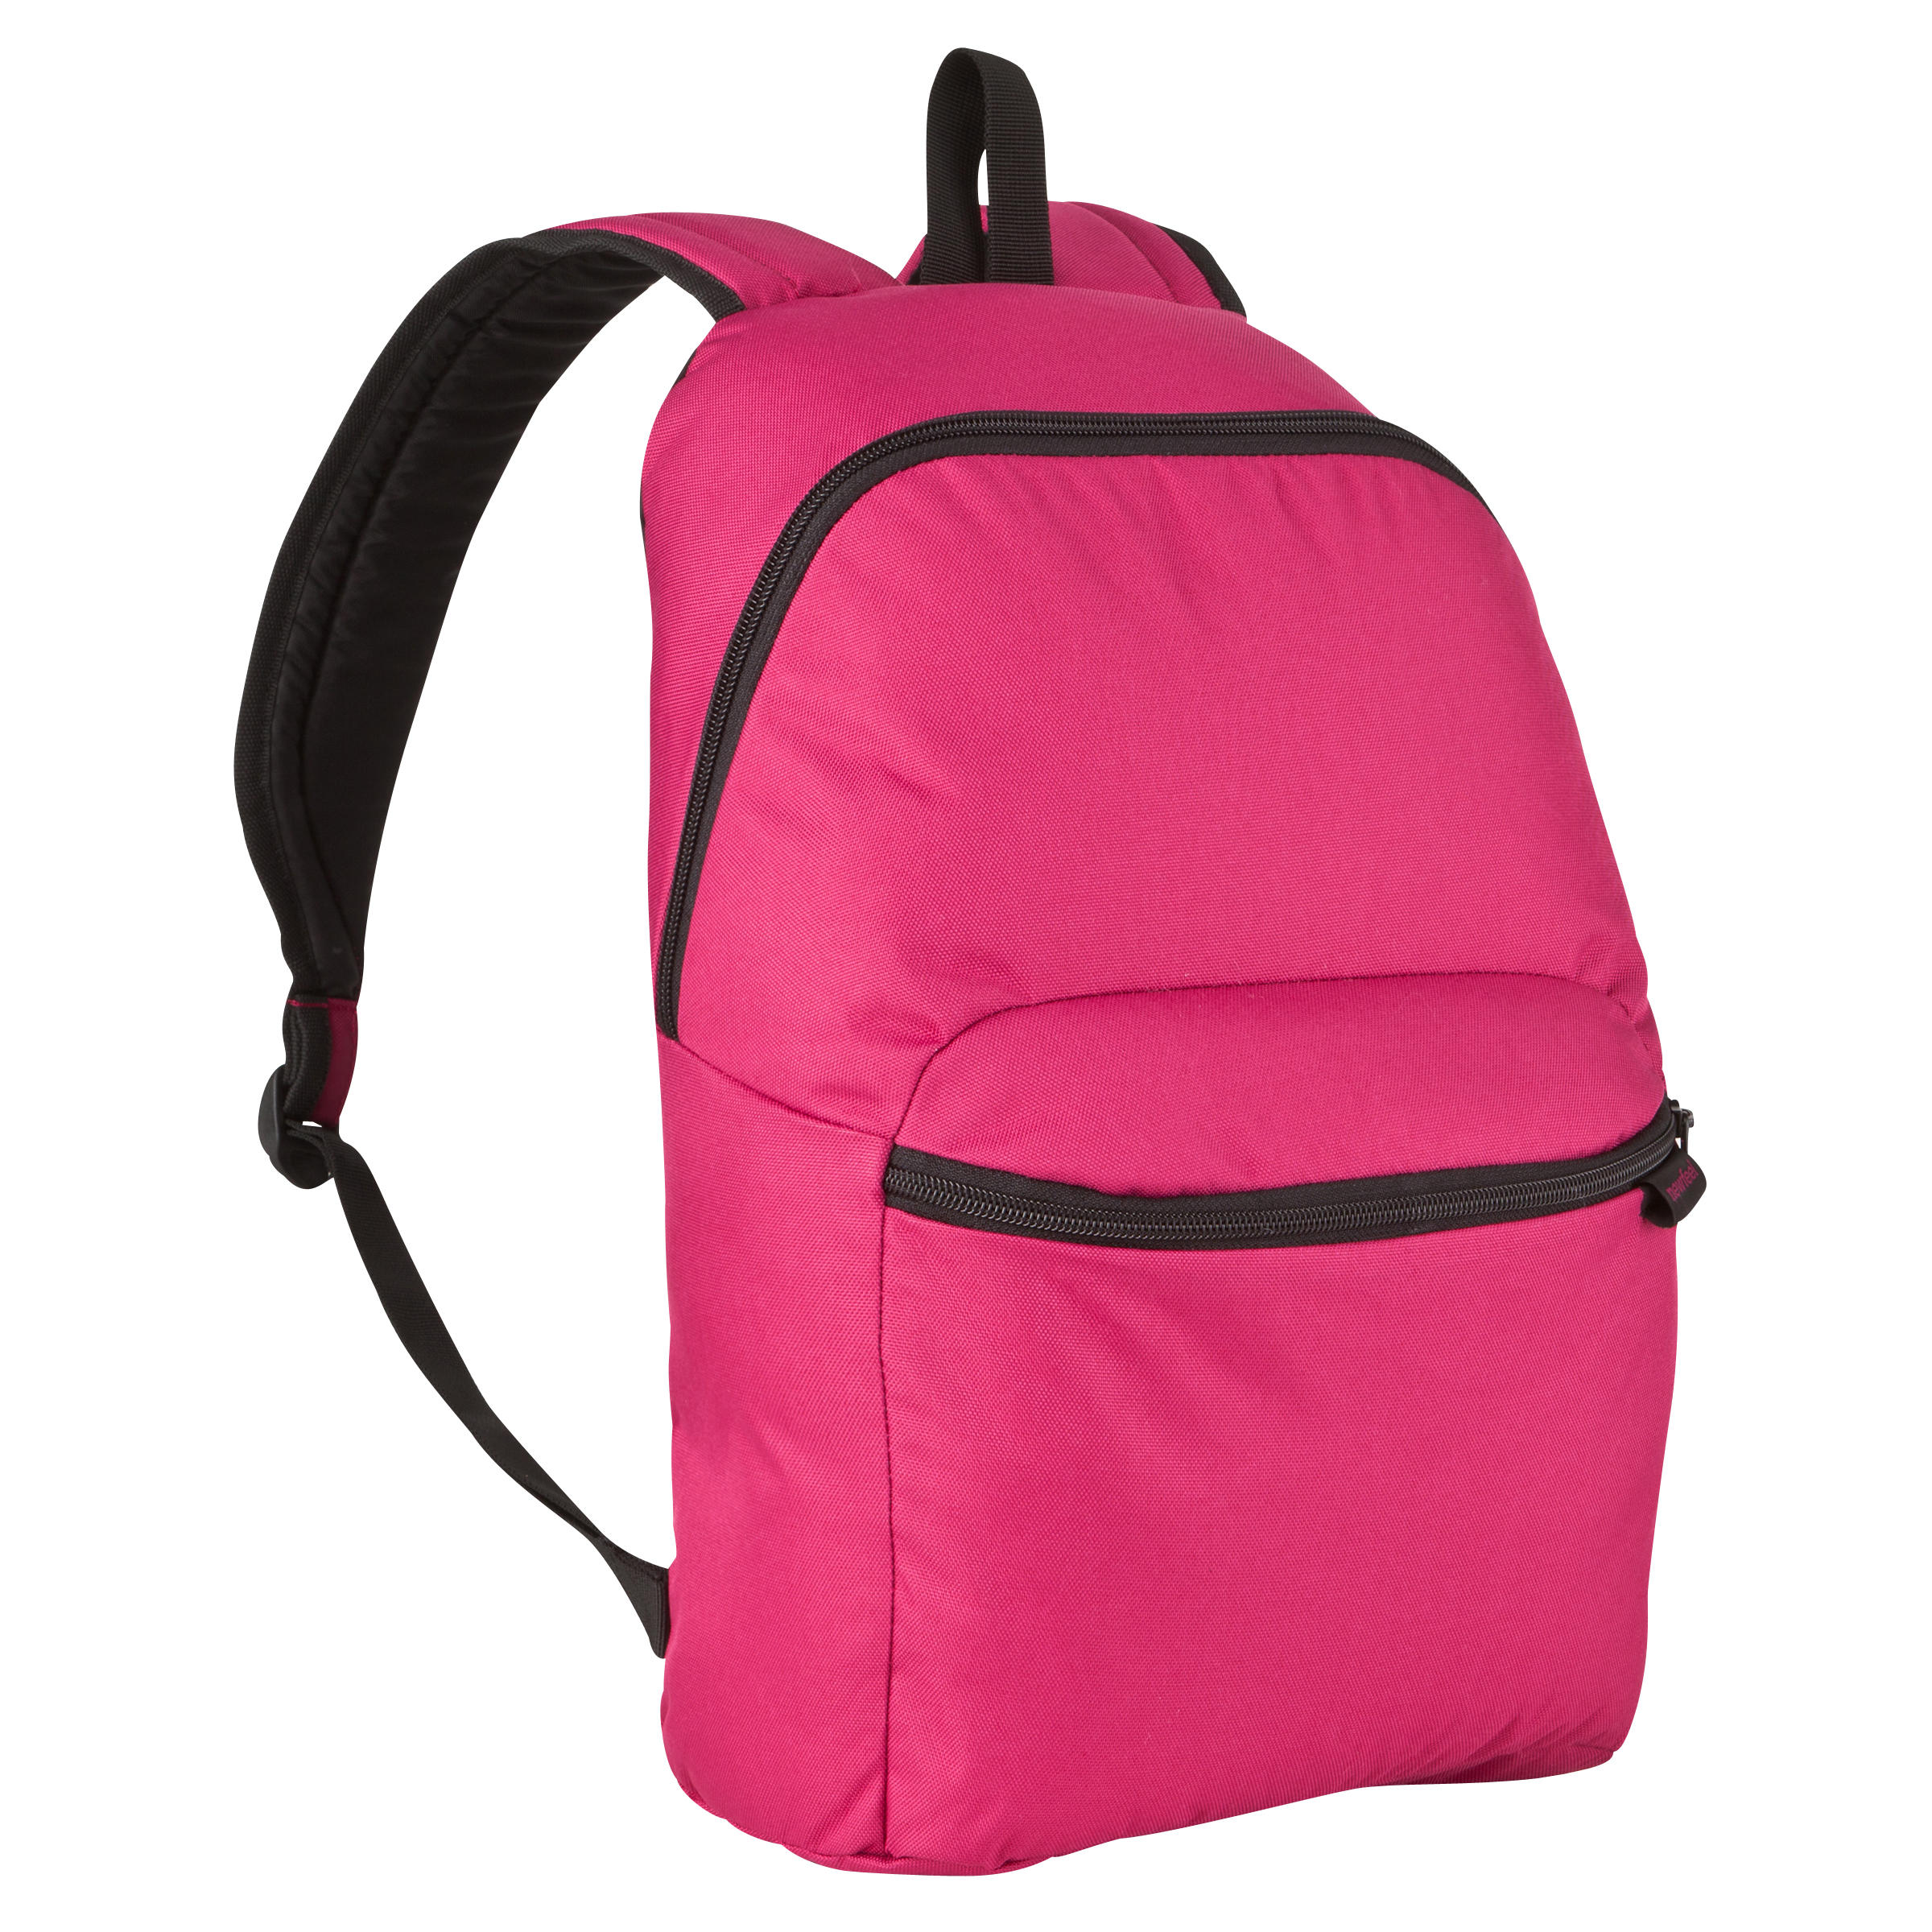 Buy Man Bags Backpacks Online In India|Abeona 17L Backpack|Newfeel